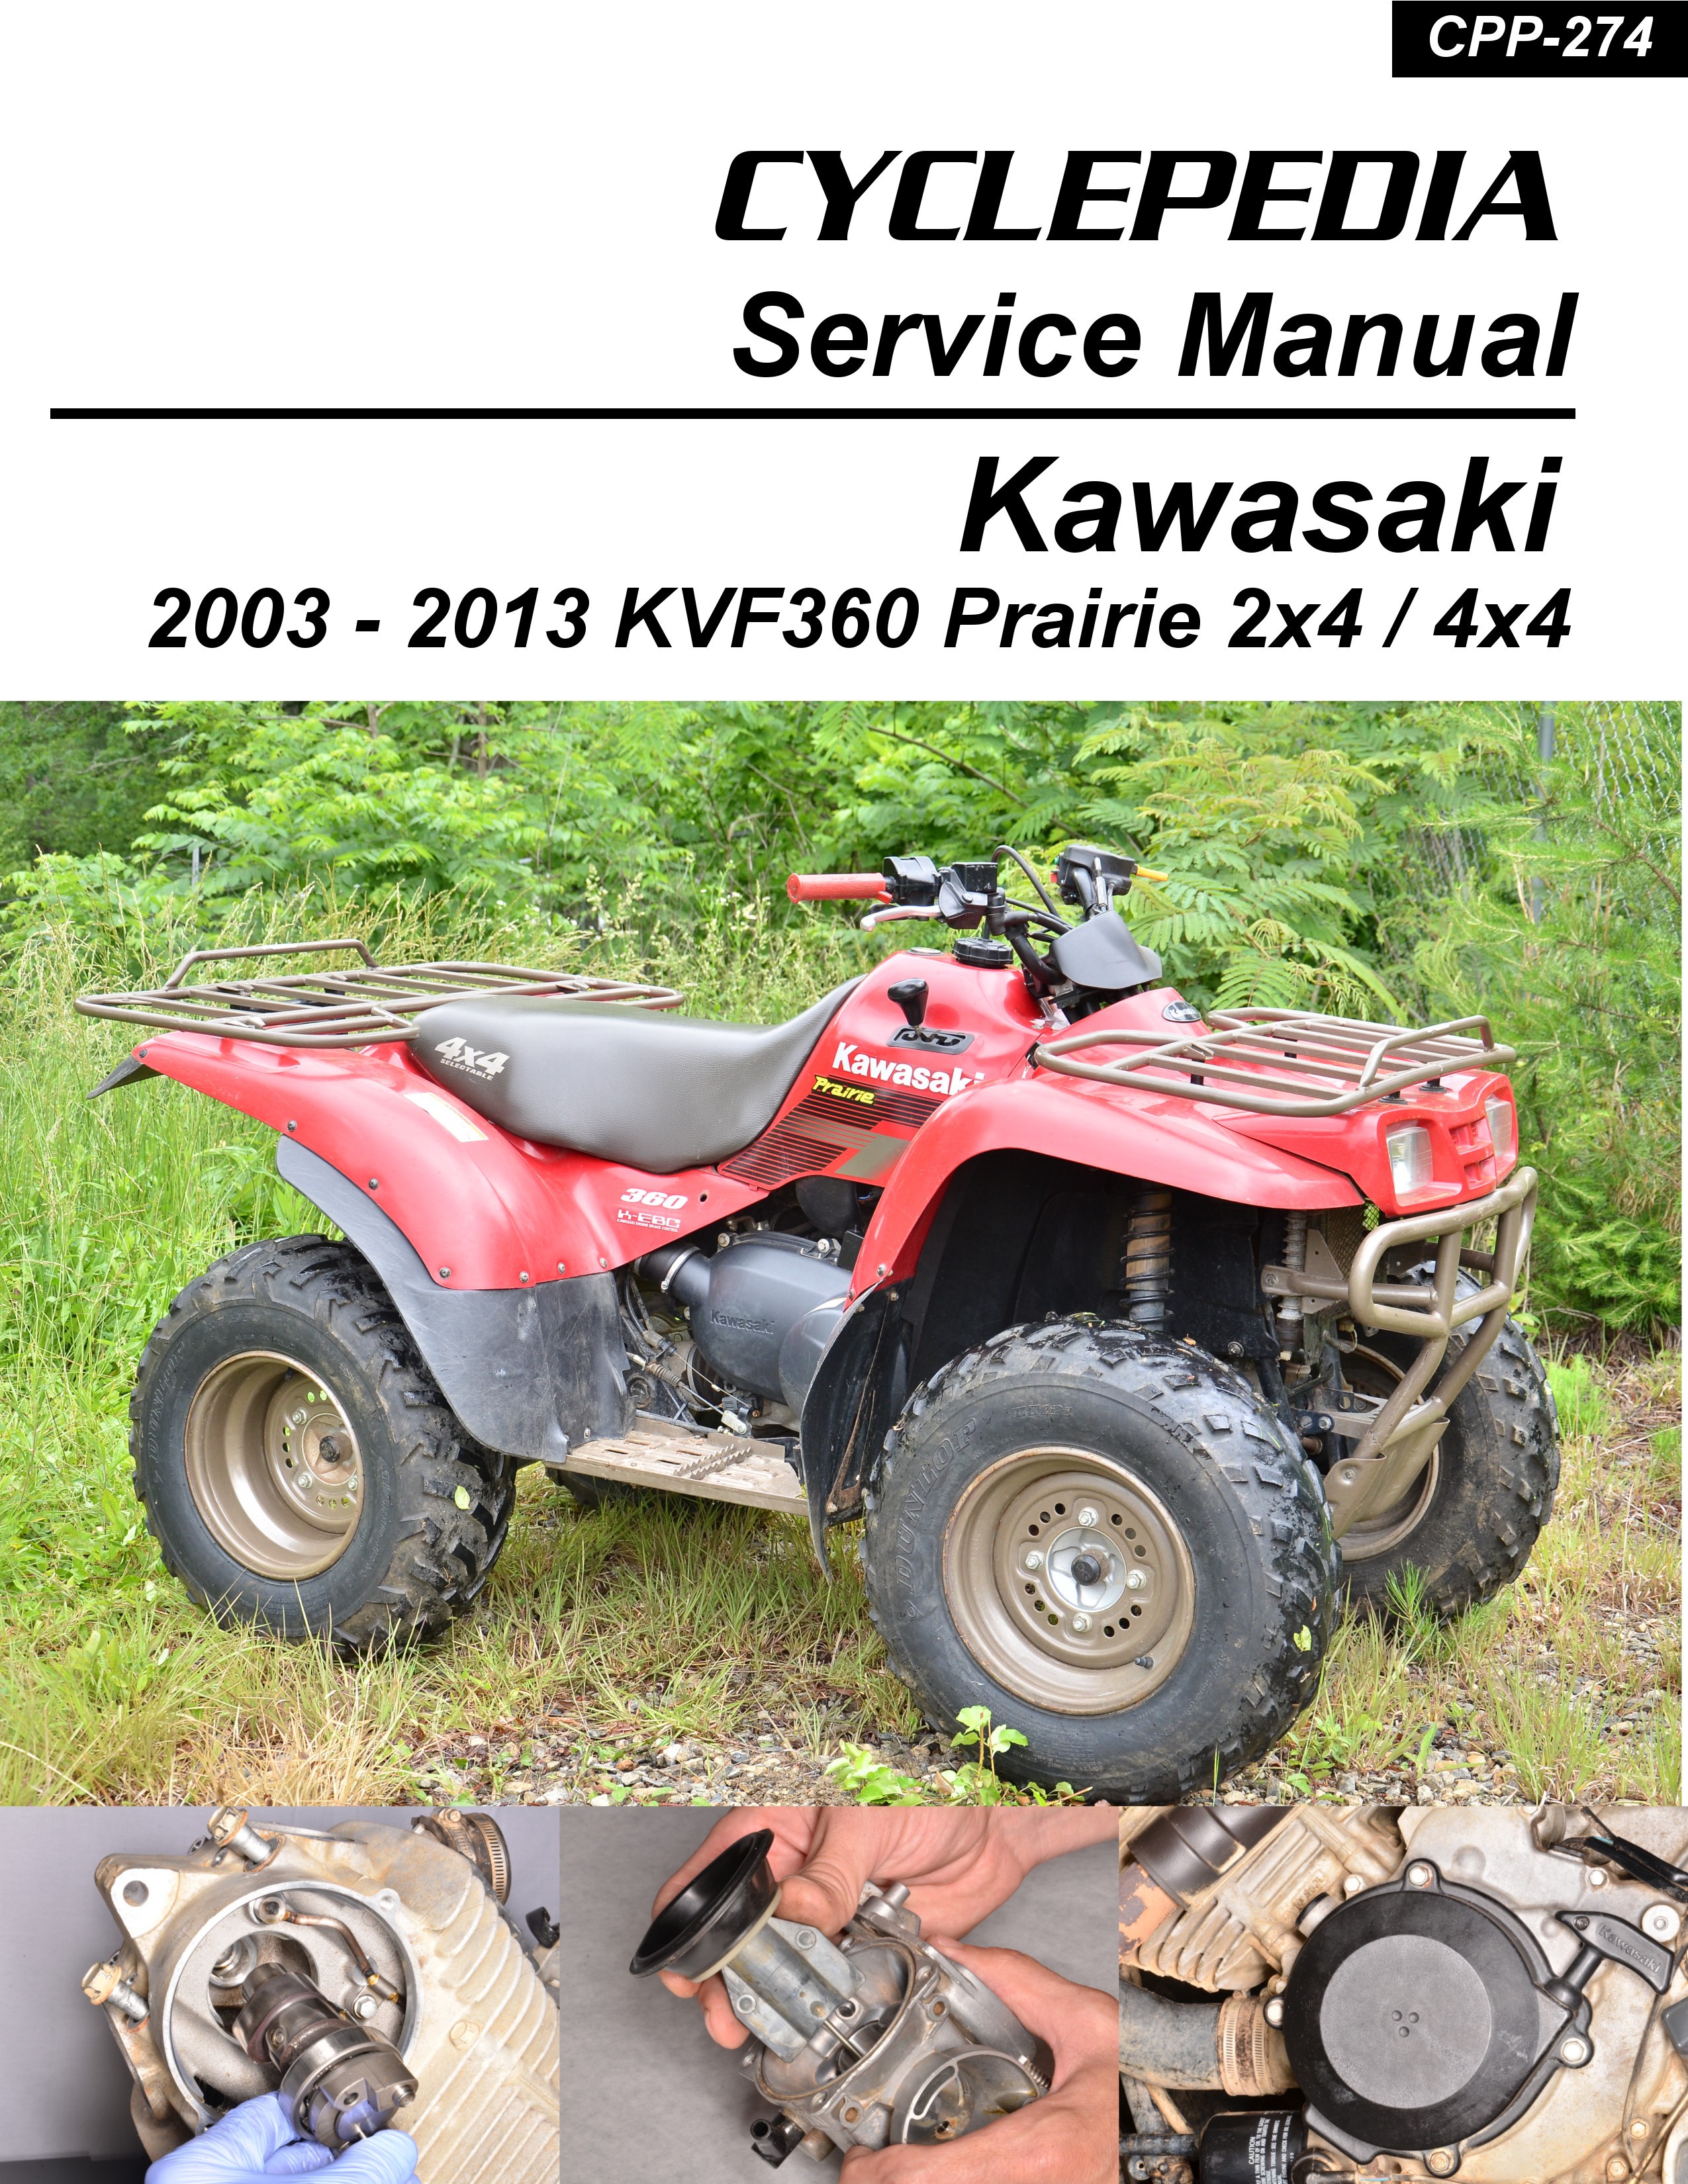 New Carburetor Carb Fit For Kawasaki Prairie 360 KVF360 KVF 360 2008-2012 4X4 